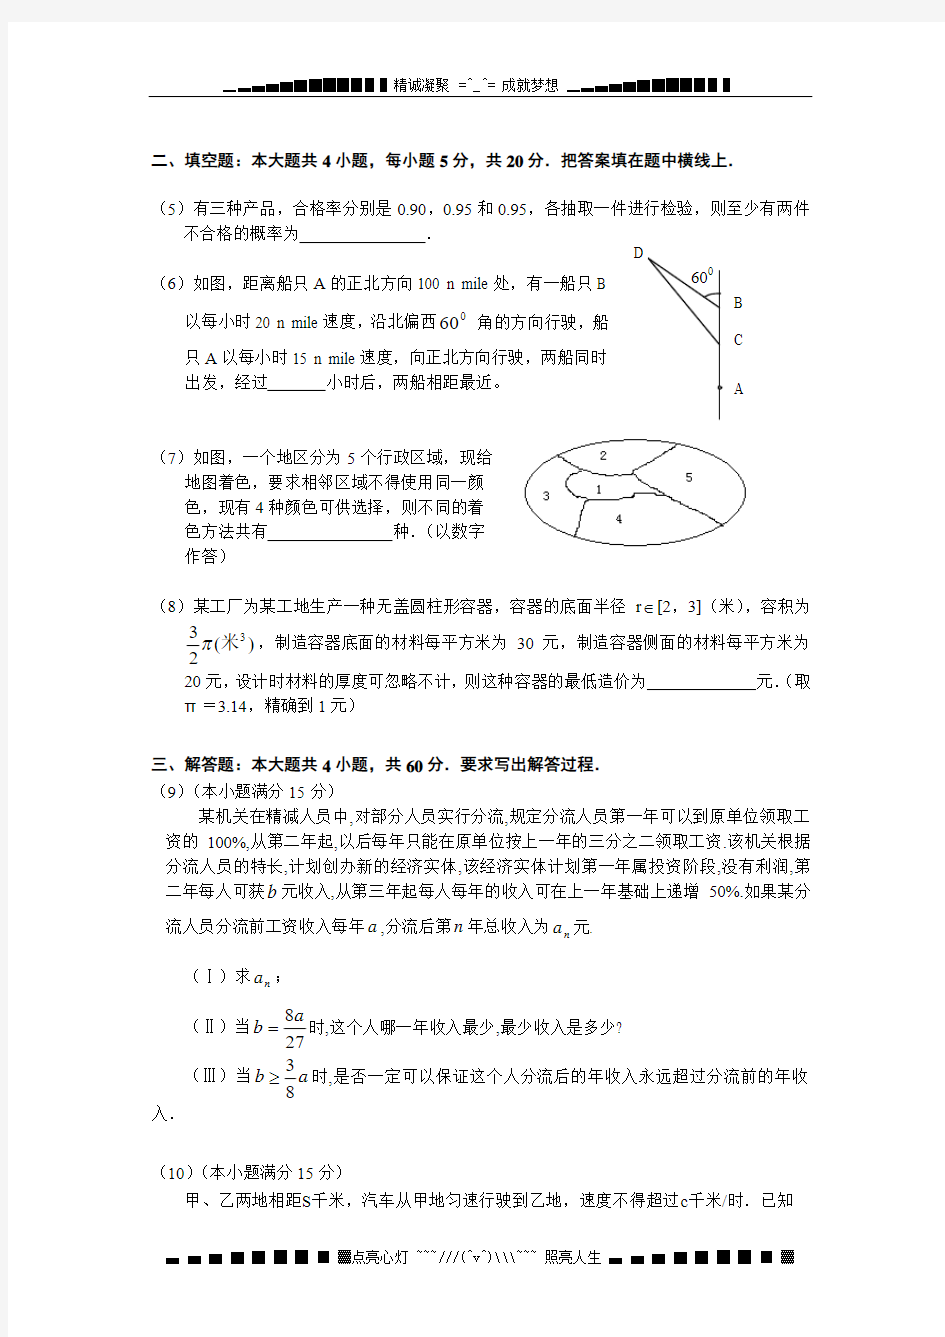 广州市高中数学知识应用竞赛决赛试题[整理]